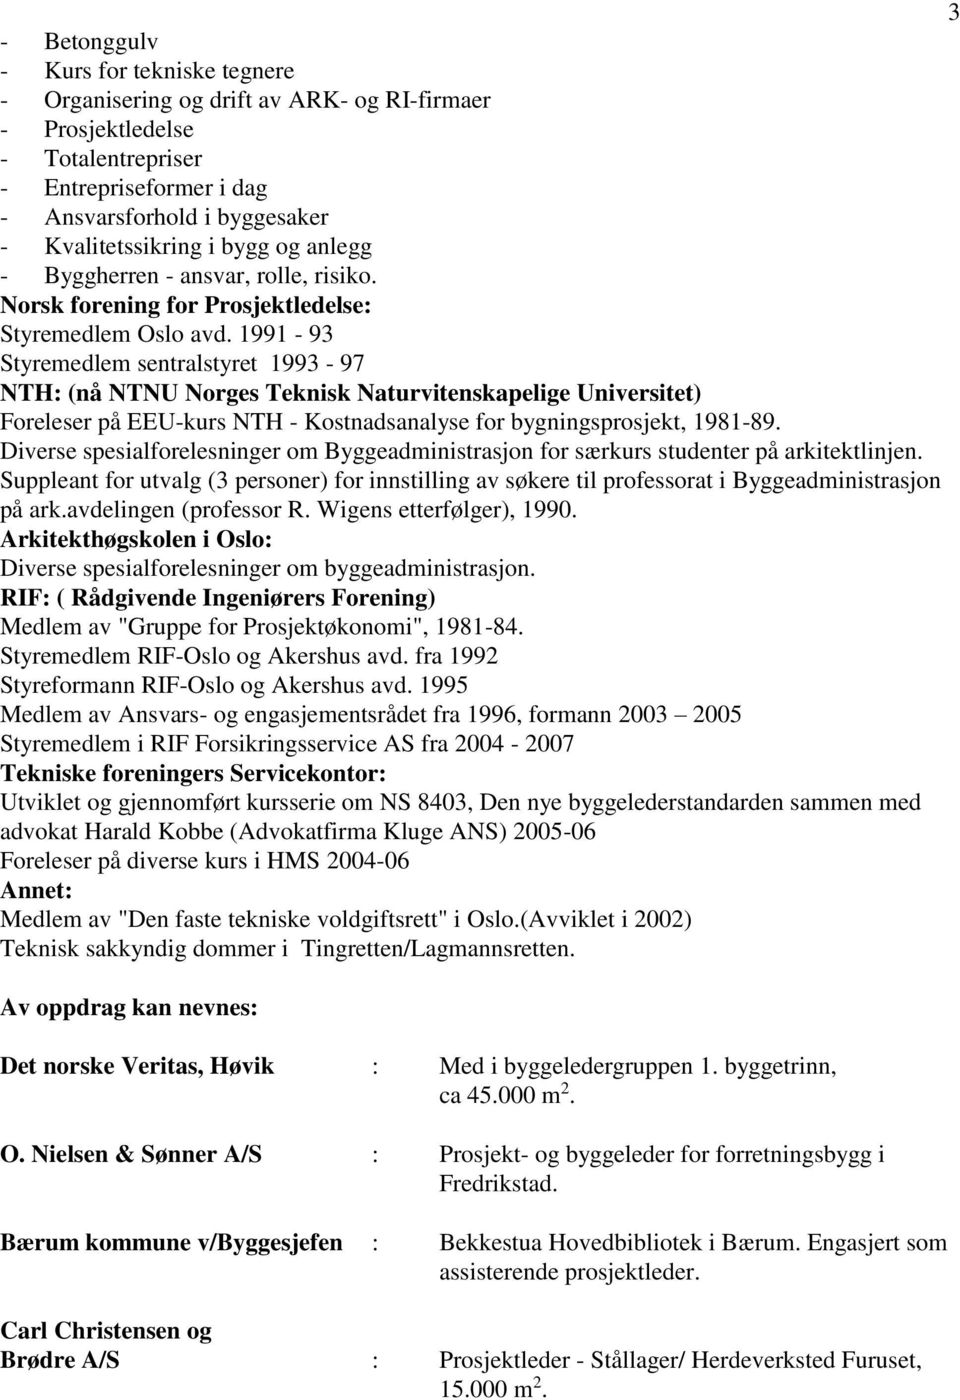 1991-93 Styremedlem sentralstyret 1993-97 NTH: (nå NTNU Norges Teknisk Naturvitenskapelige Universitet) Foreleser på EEU-kurs NTH - Kostnadsanalyse for bygningsprosjekt, 1981-89.